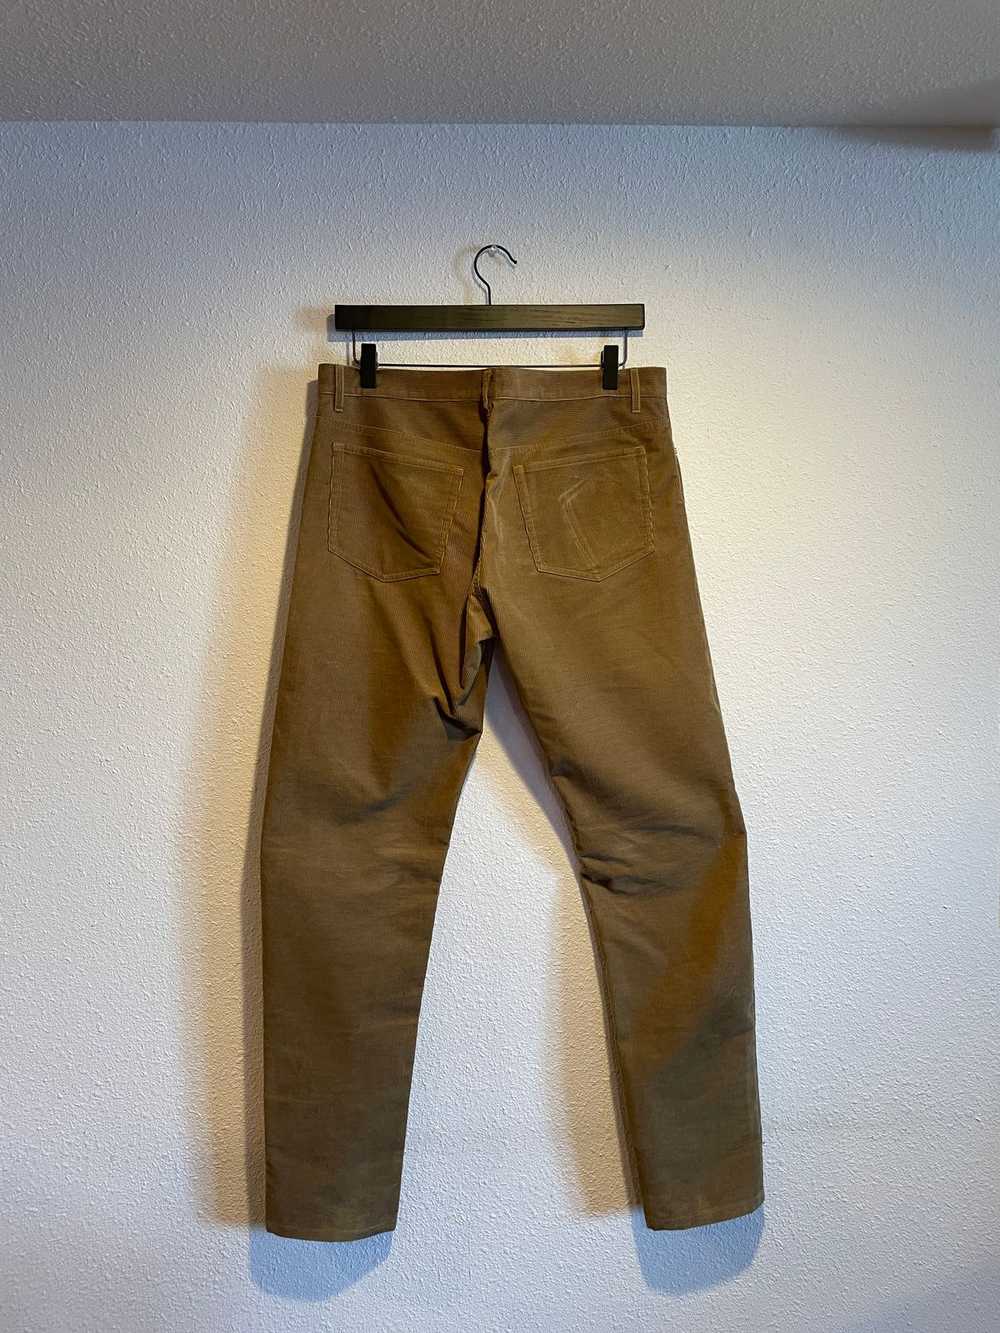 A.P.C. A.P.C. Petit Standard Corduroy Pants - image 2